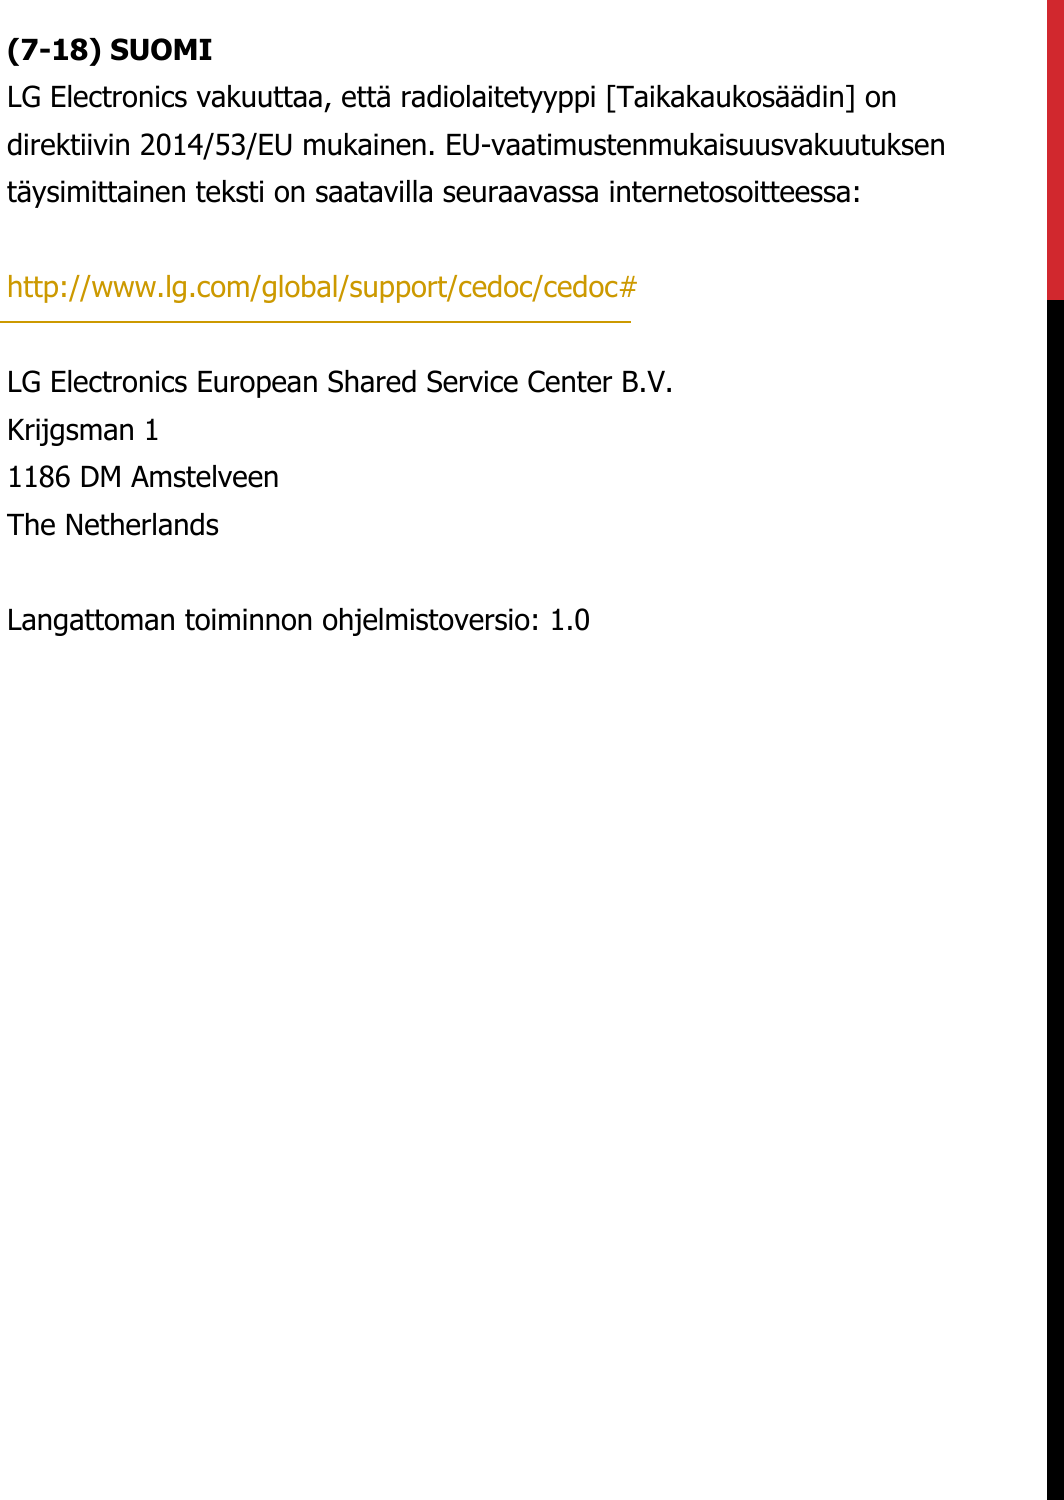 (7-18) SUOMILG Electronics vakuuttaa, että radiolaitetyyppi [Taikakaukosäädin] on direktiivin 2014/53/EU mukainen. EU-vaatimustenmukaisuusvakuutuksen täysimittainen teksti on saatavilla seuraavassa internetosoitteessa:   http://www.lg.com/global/support/cedoc/cedoc#   LG Electronics European Shared Service Center B.V.  Krijgsman 1  1186 DM Amstelveen  The Netherlands   Langattoman toiminnon ohjelmistoversio: 1.0